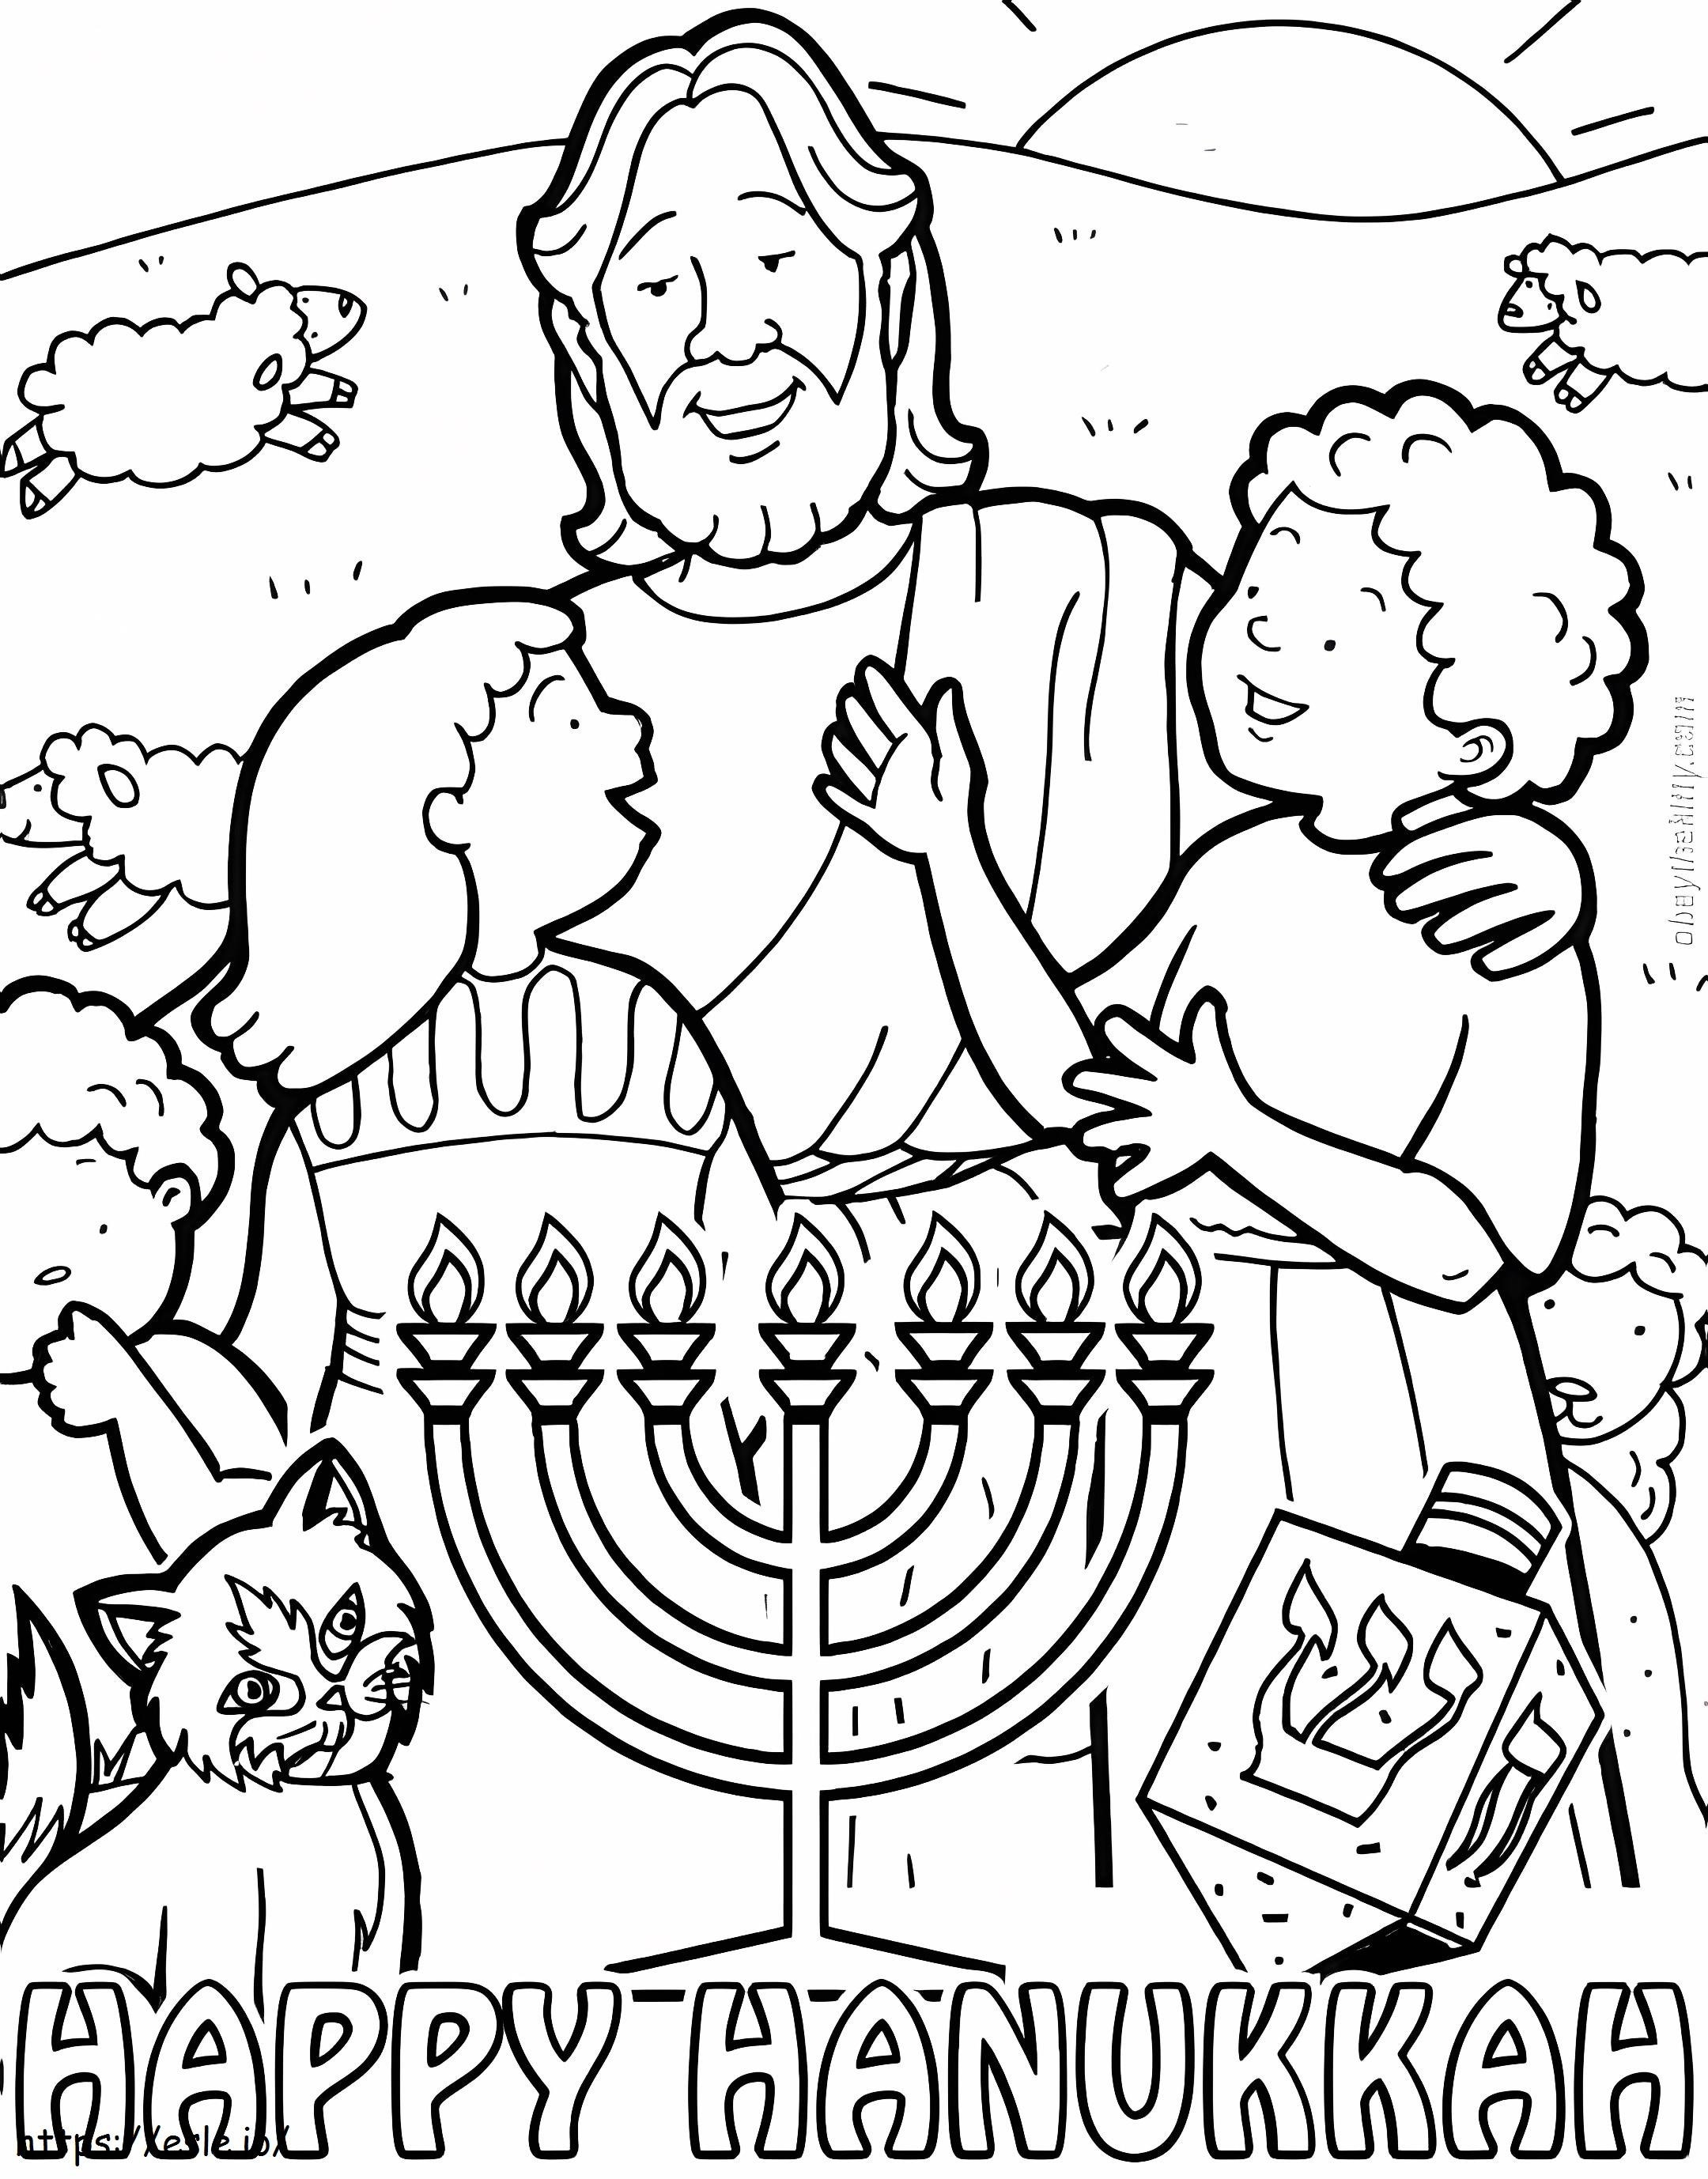 Hanukkah 4 coloring page